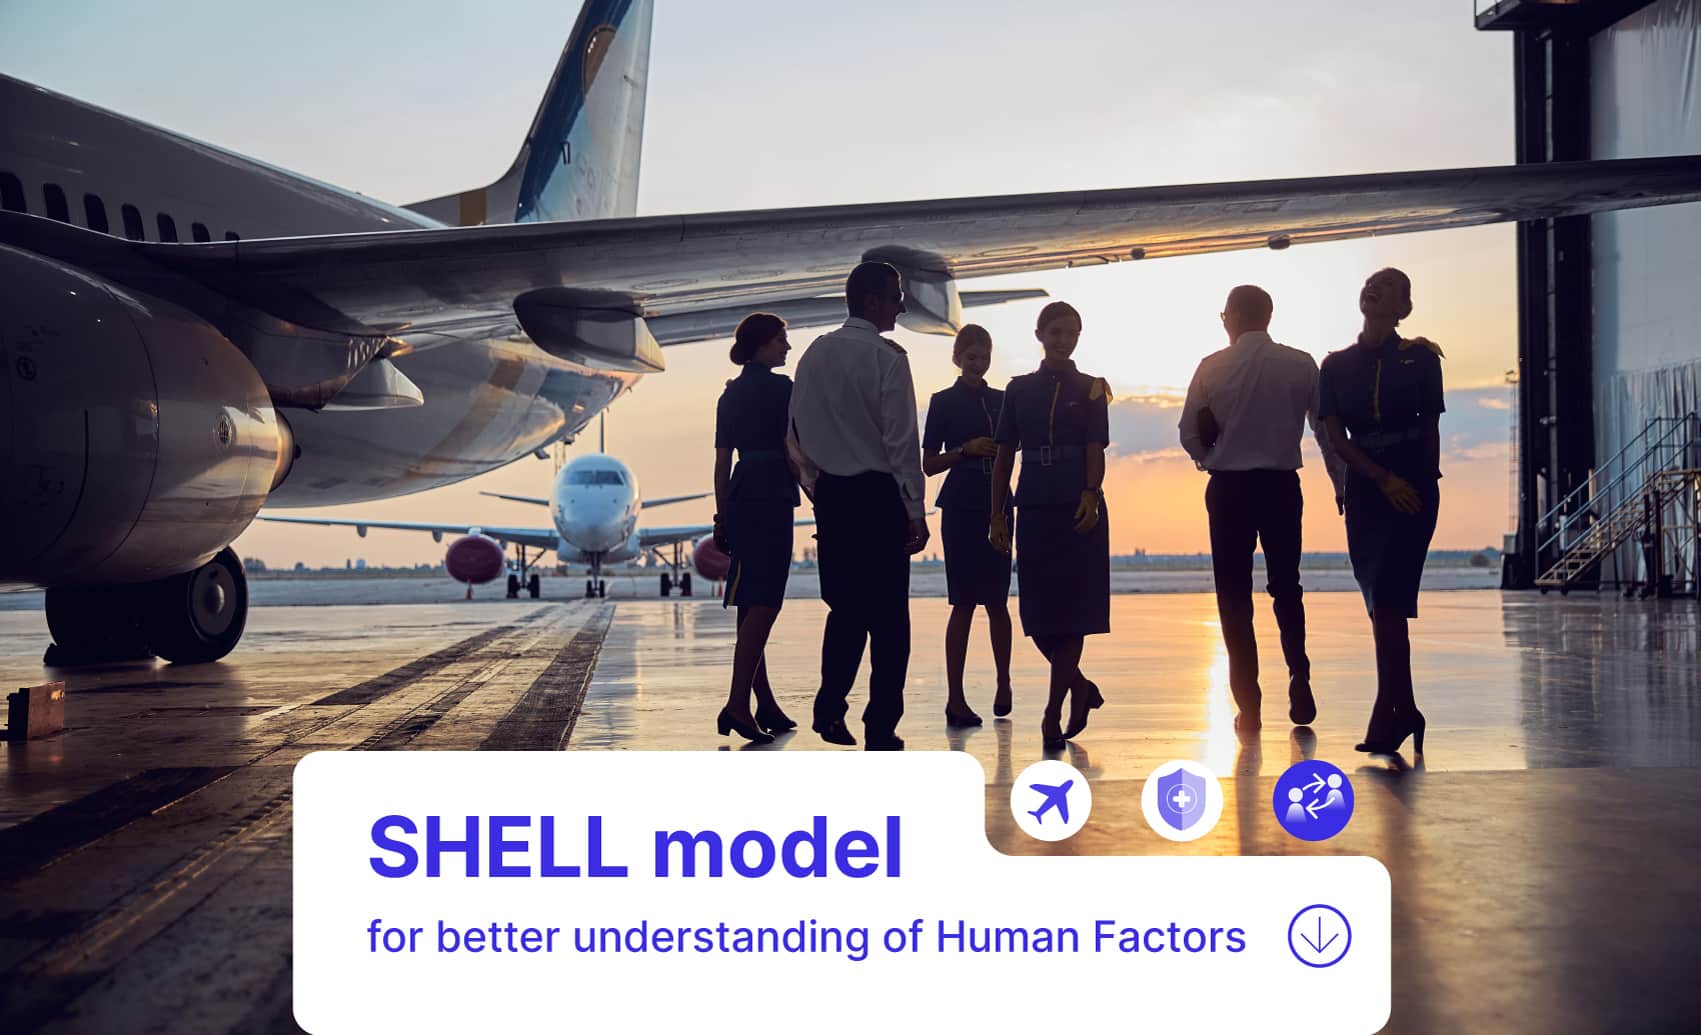 SHELL model of human factors